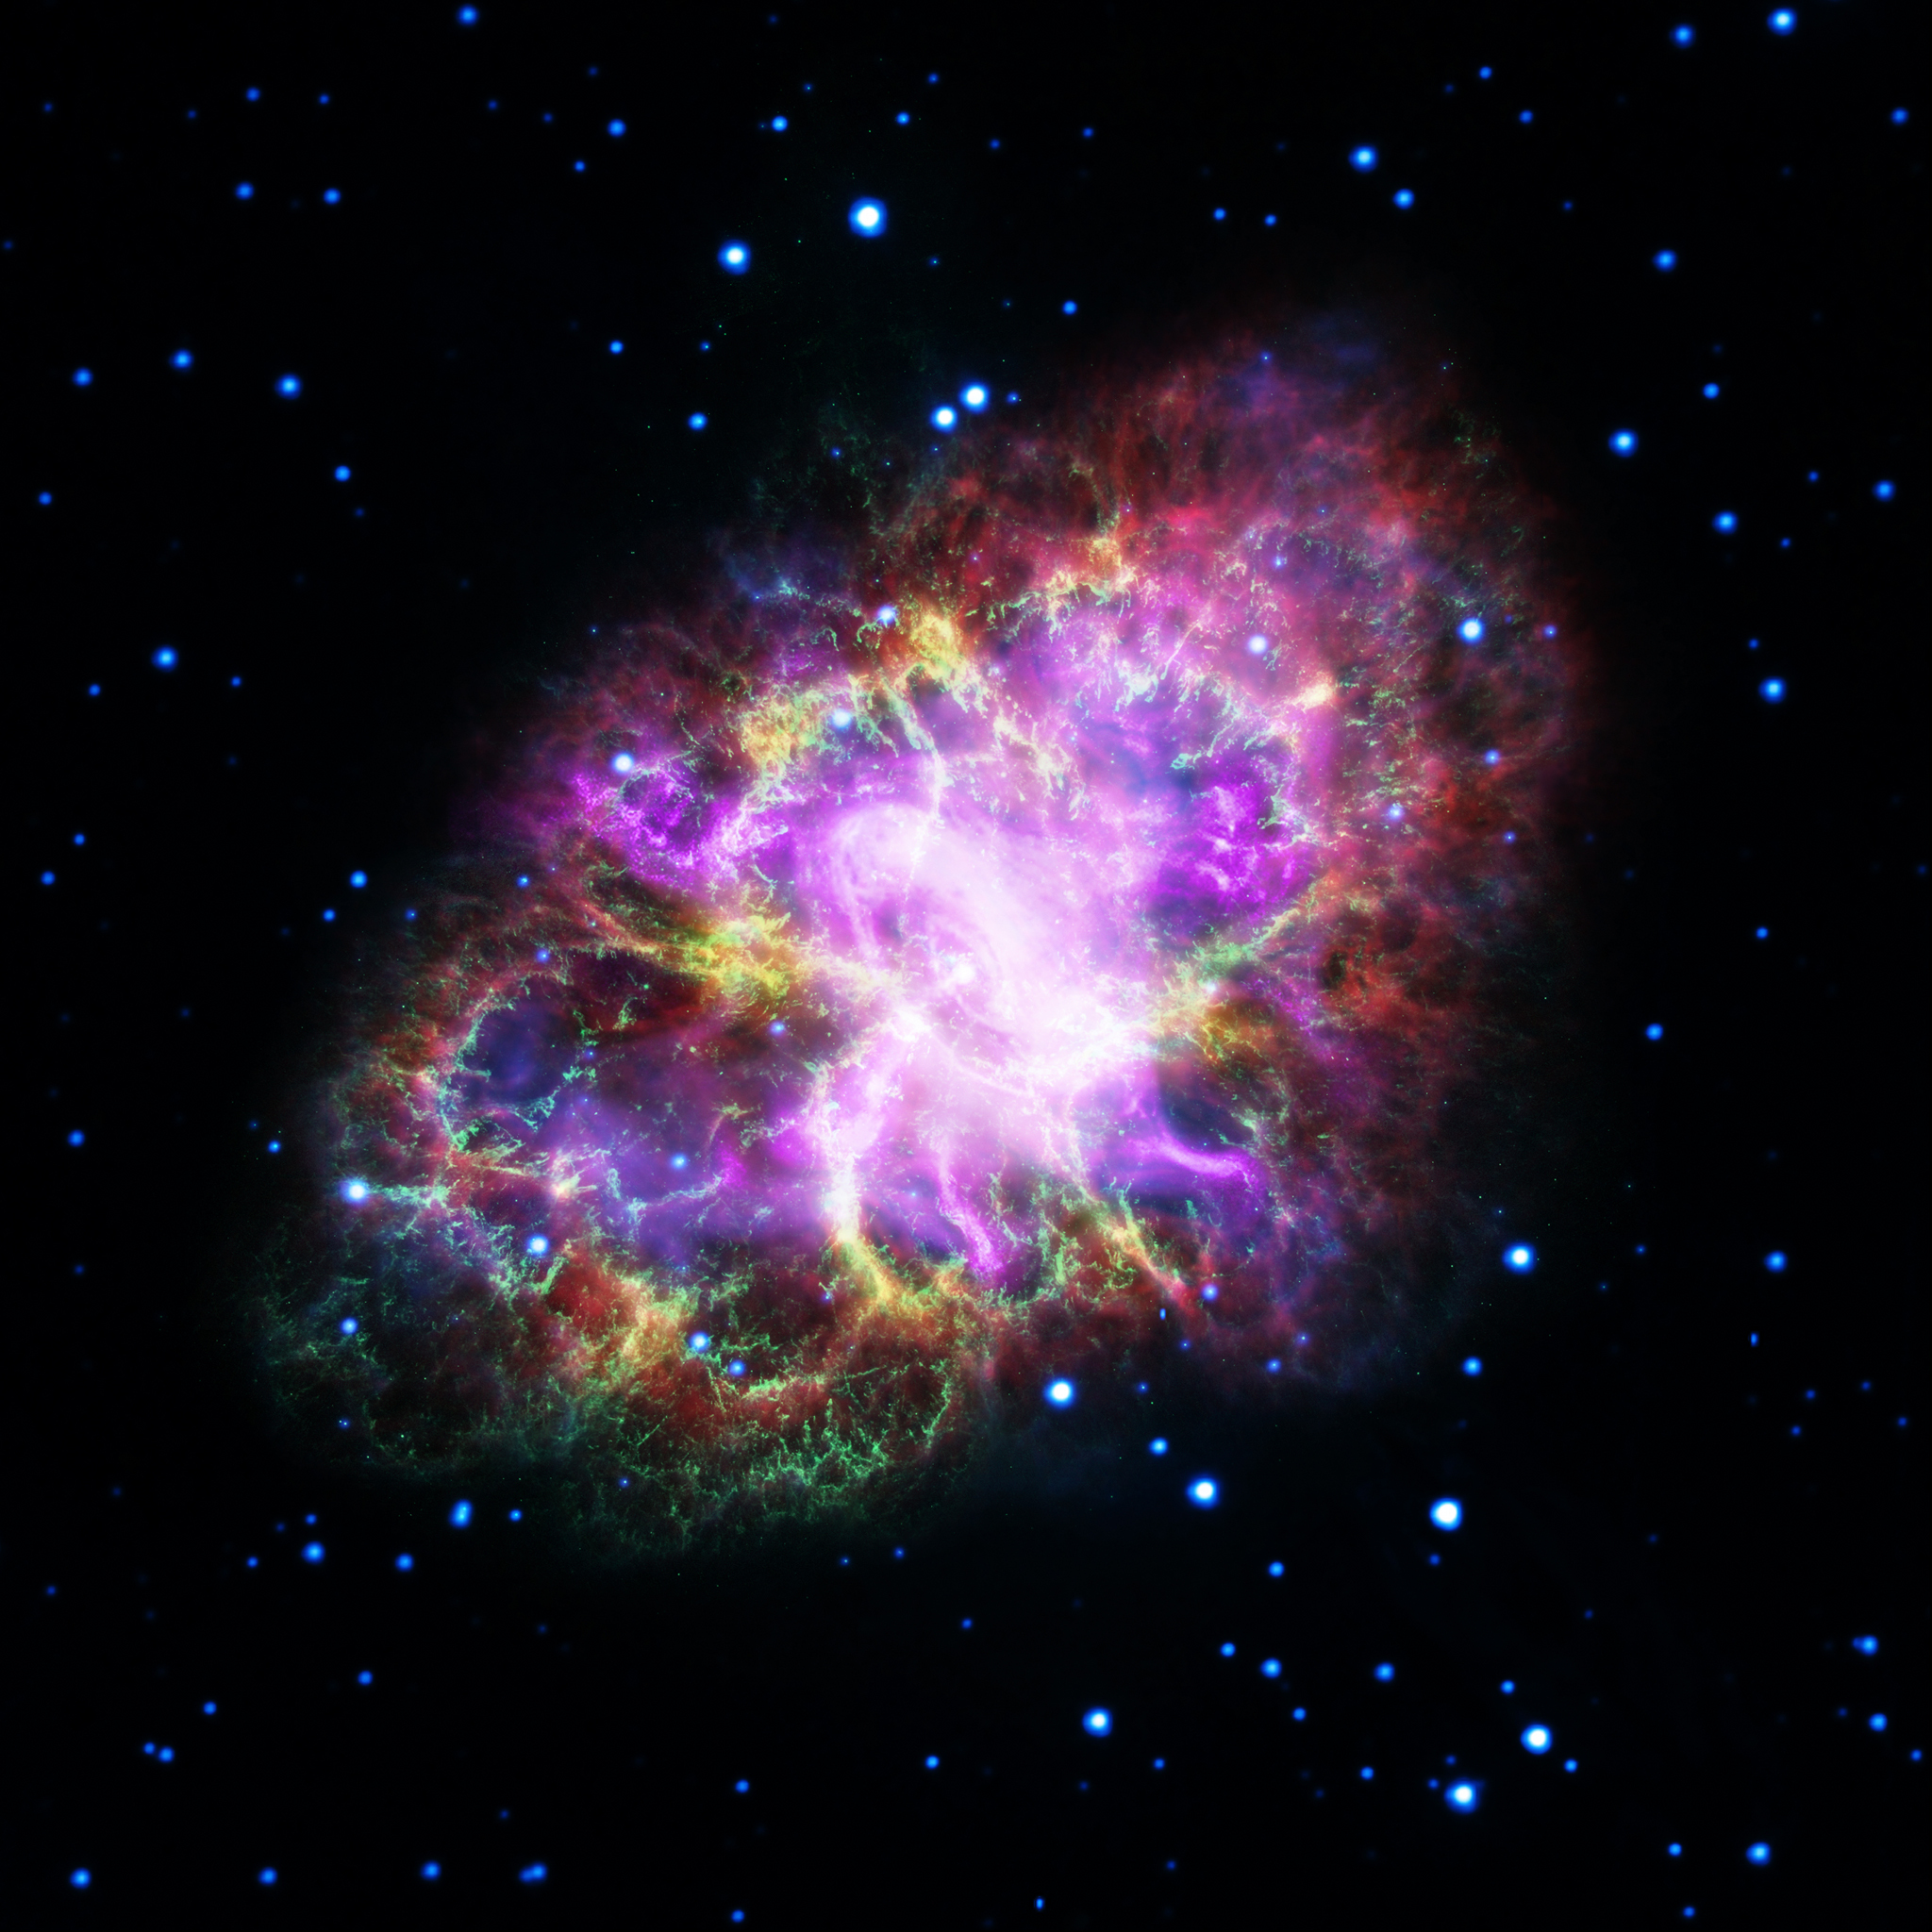 圖二：蟹狀星雲的多波段合成影像。藍色是X射線 (錢德拉太空望遠鏡)，紅色是可見光 (哈伯太空望遠鏡)，紫色是紅外線 (史匹哲太空望遠鏡)。X射線影像的明亮中心點是蟹狀星雲脈衝星。影像版權：X 射線: NASA/CXC/SAO/F.Seward; 可見光: NASA/ESA/ASU/J.Hester & A.Loll; 紅外線: NASA/JPL-Caltech/Univ. Minn./R.Gehrz